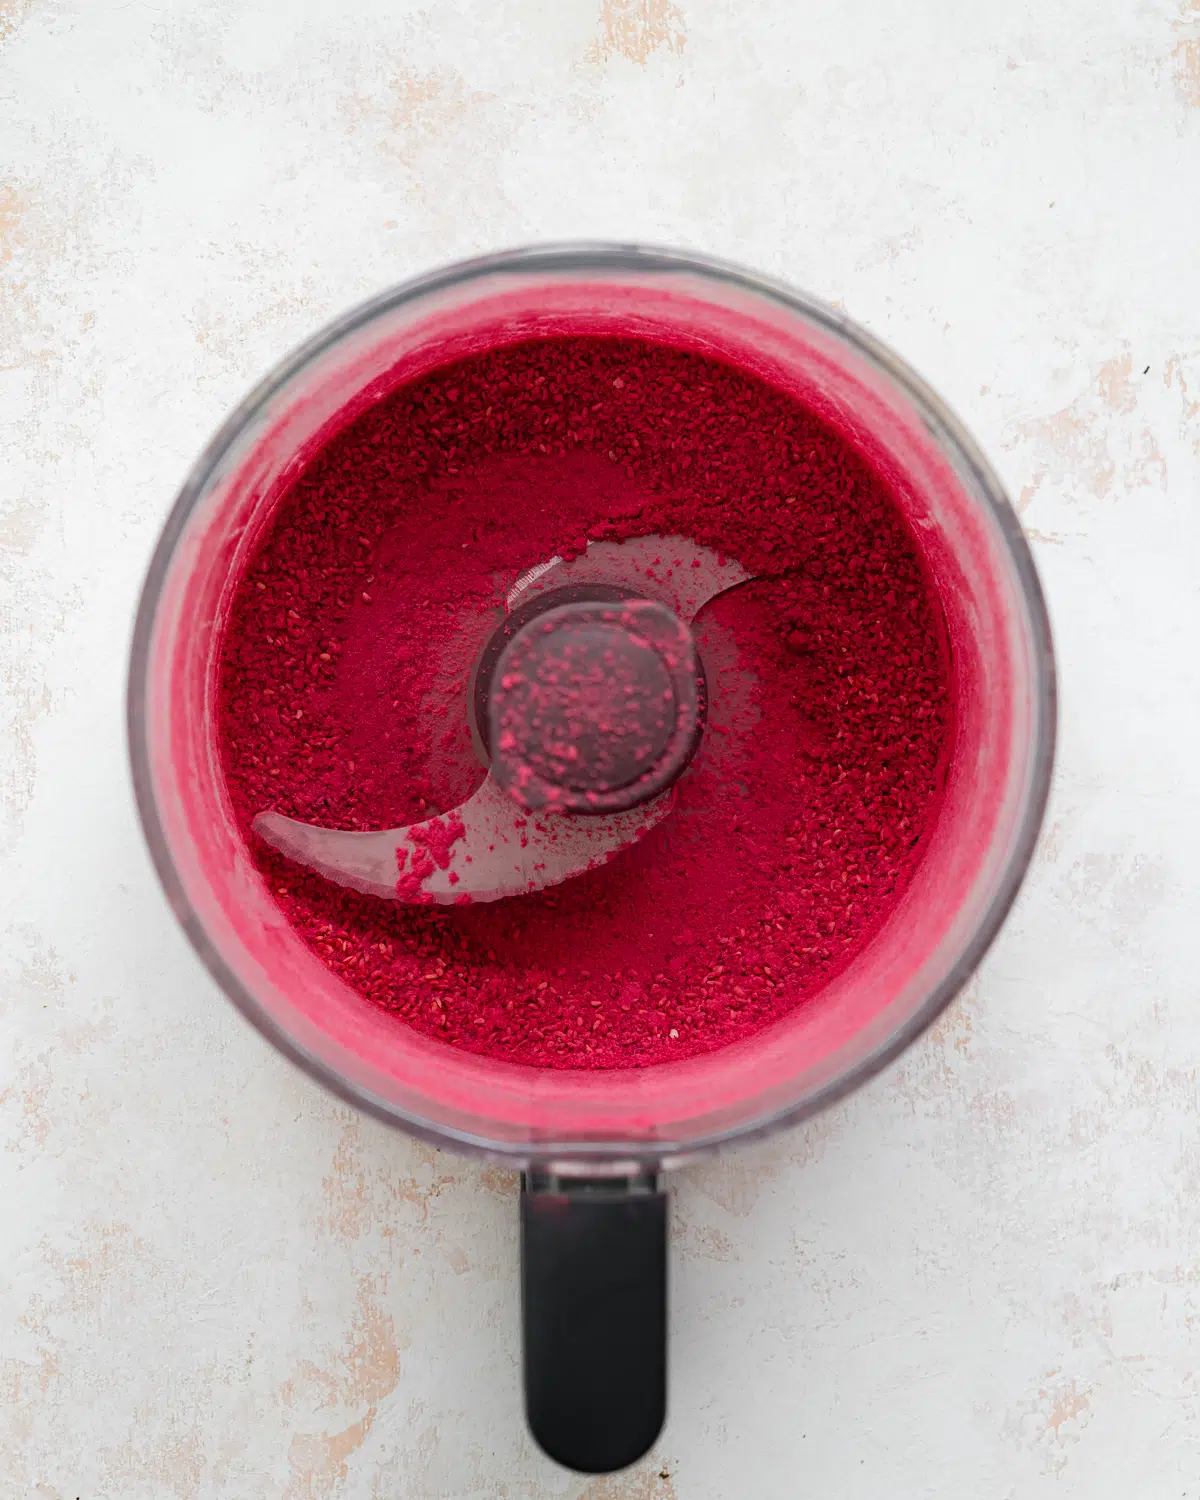 raspberry powder in a food processor.